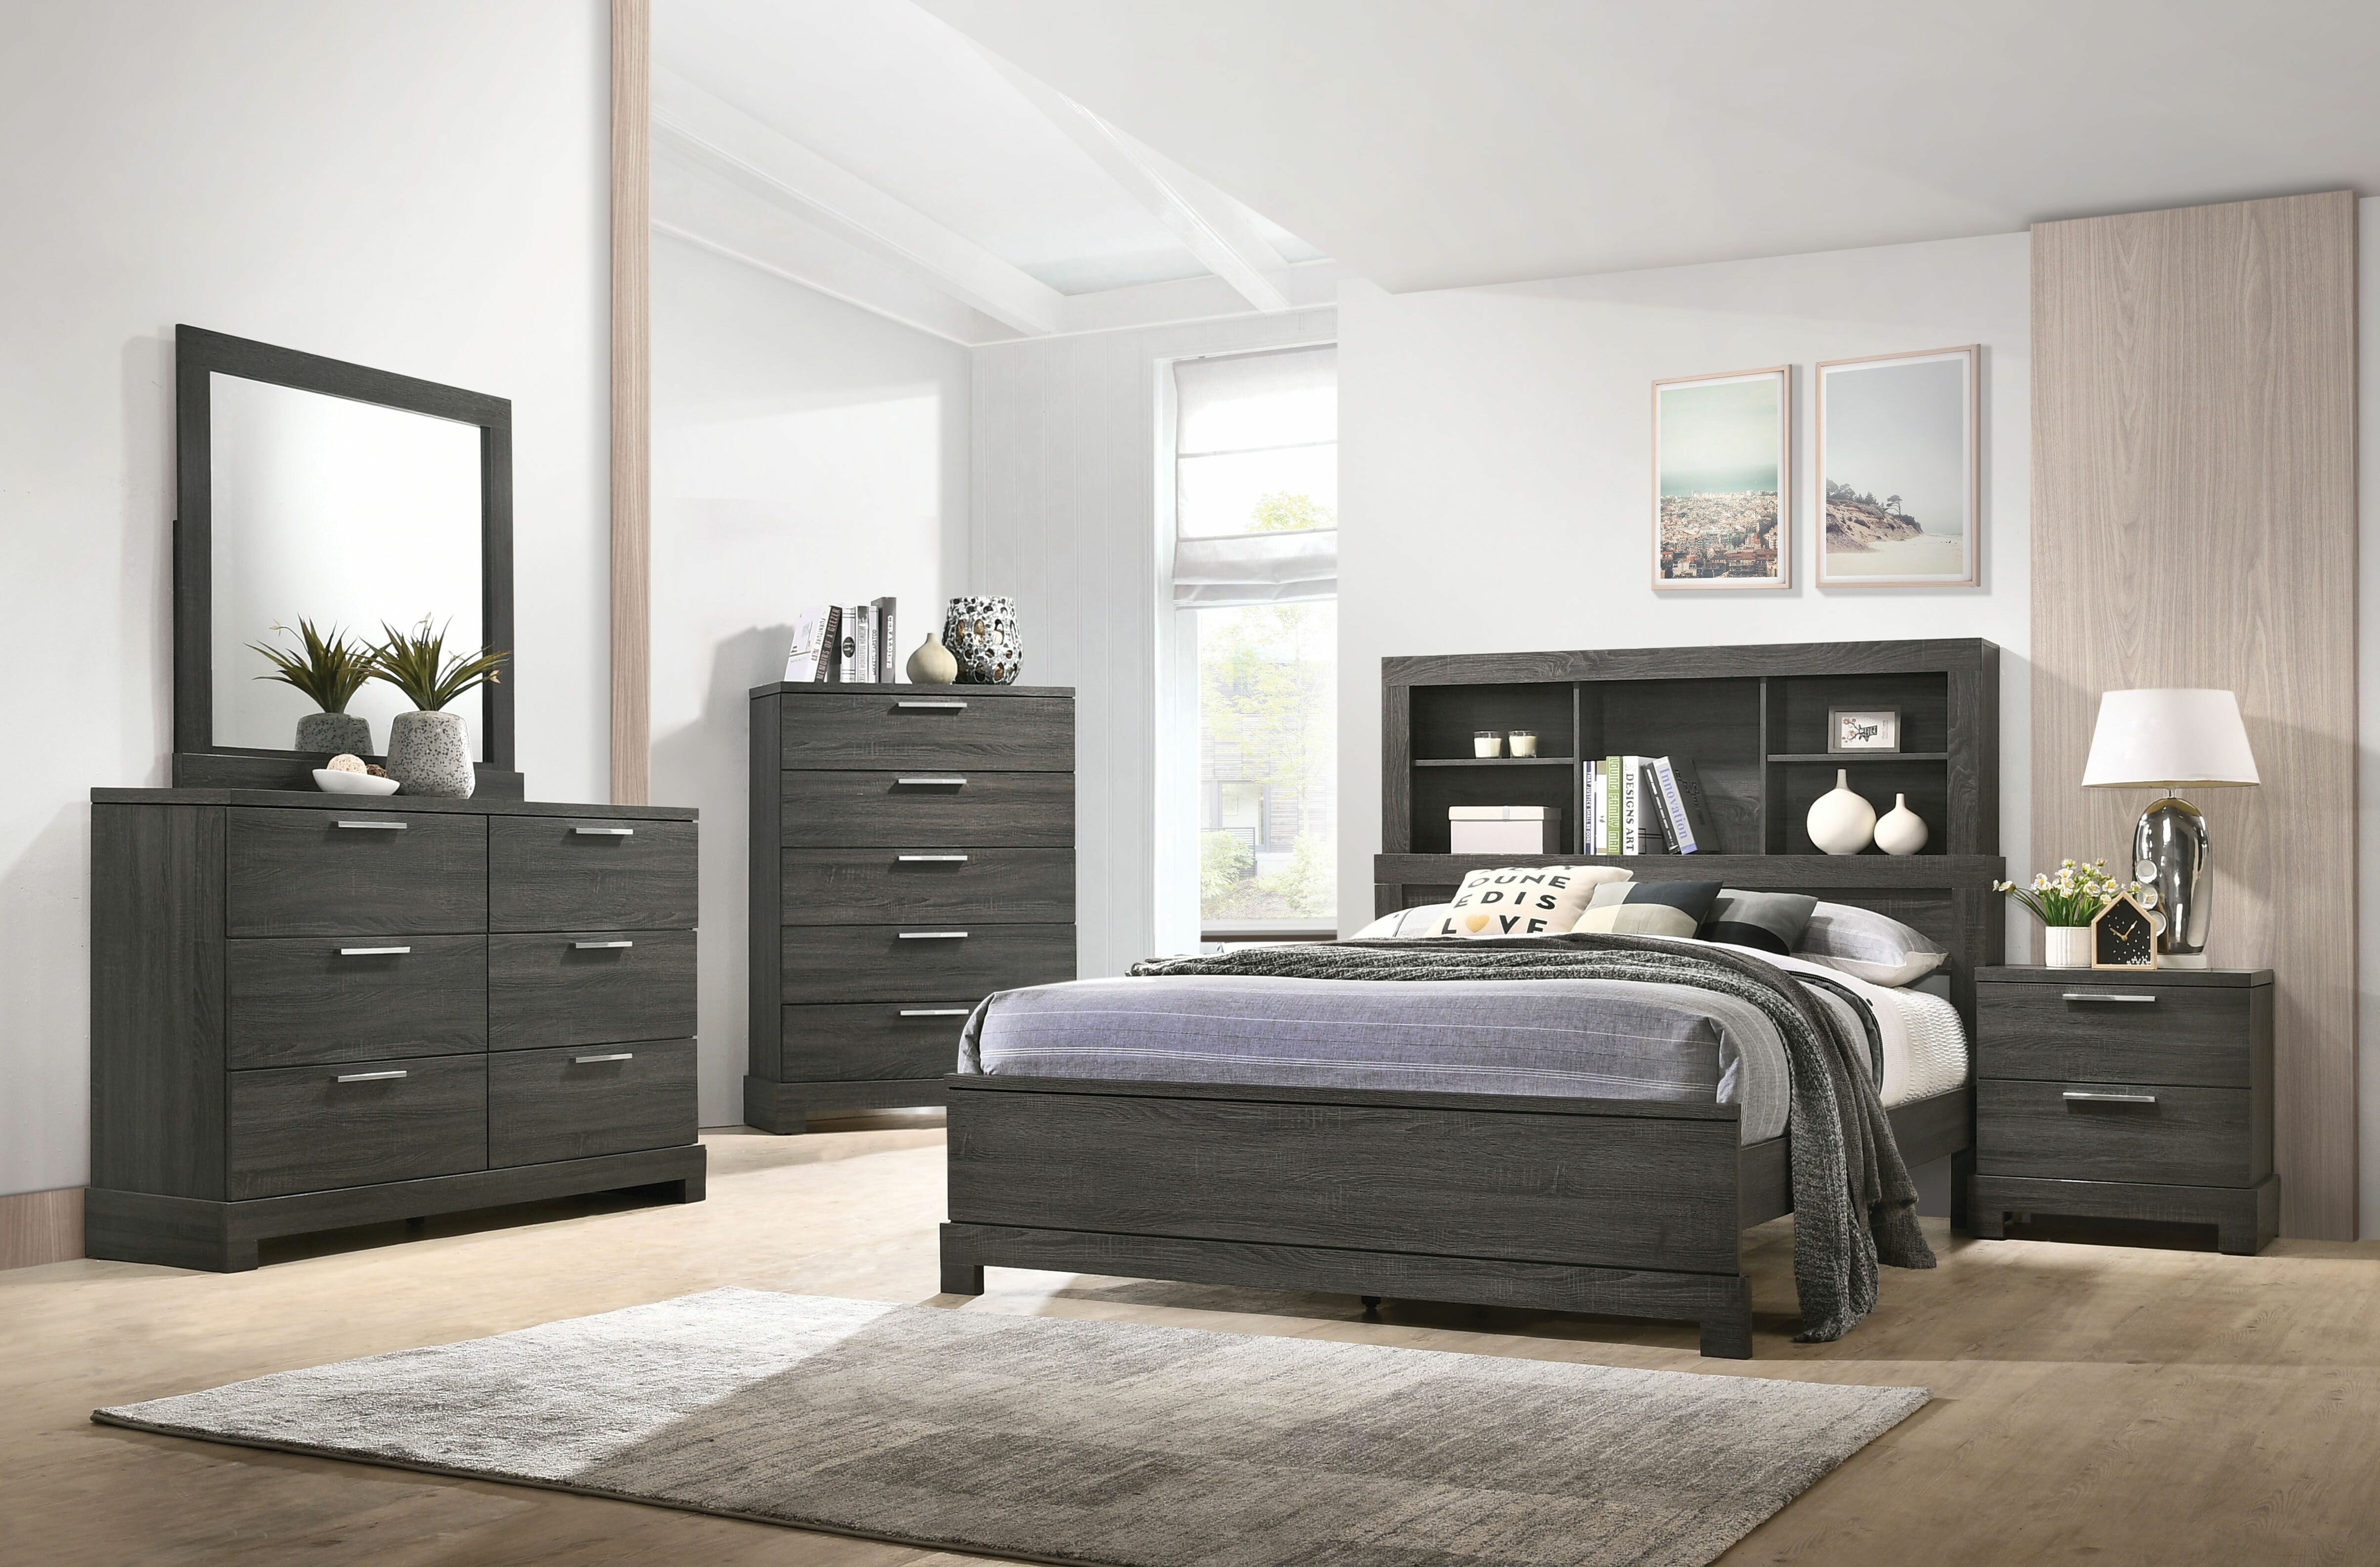 Brayden Studio Sunglow Queen Standard Configurable Bedroom Set